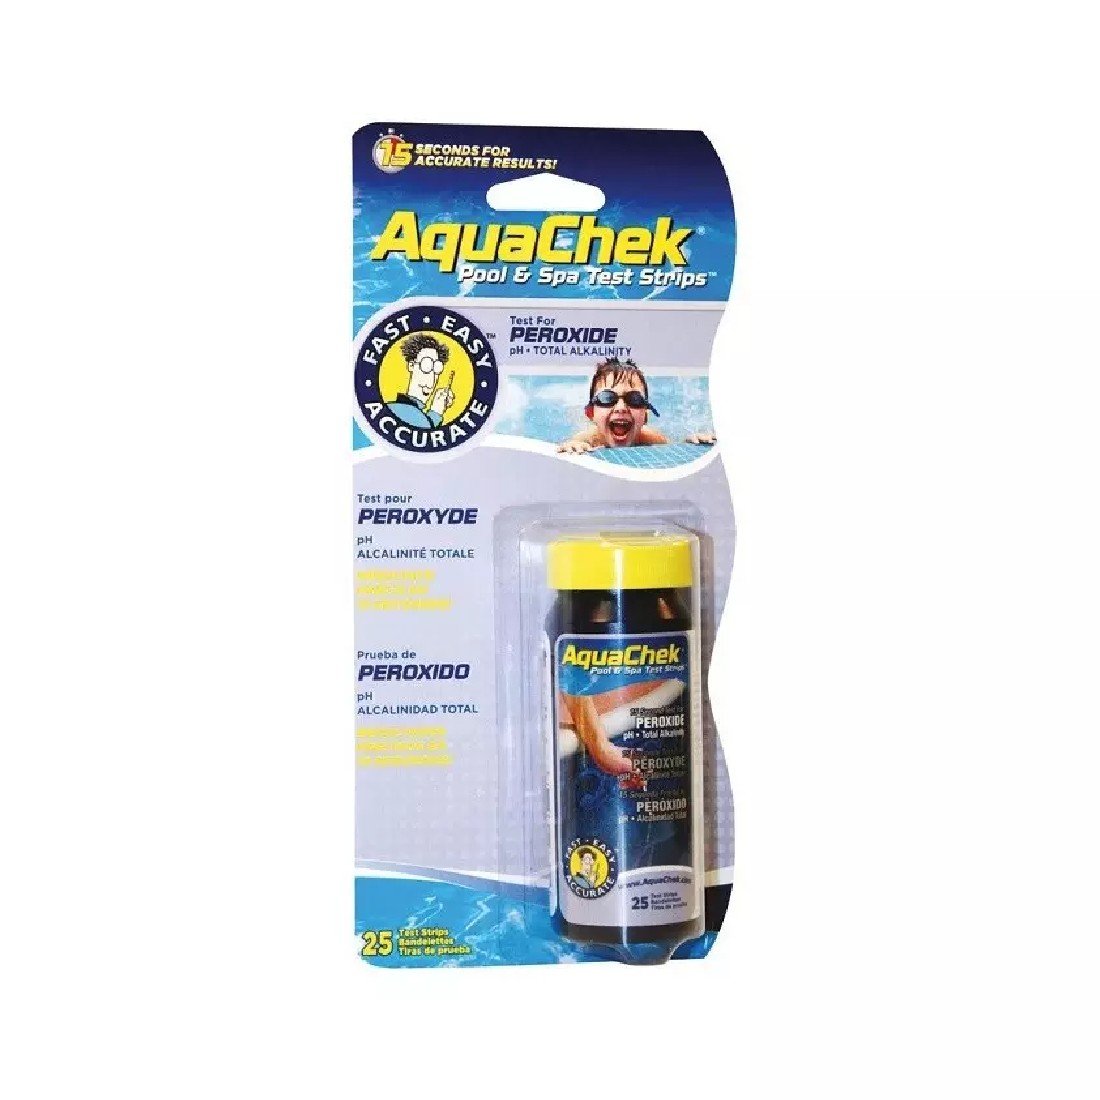 Aquachek Peroxide 3 in 1 - 25 test strips